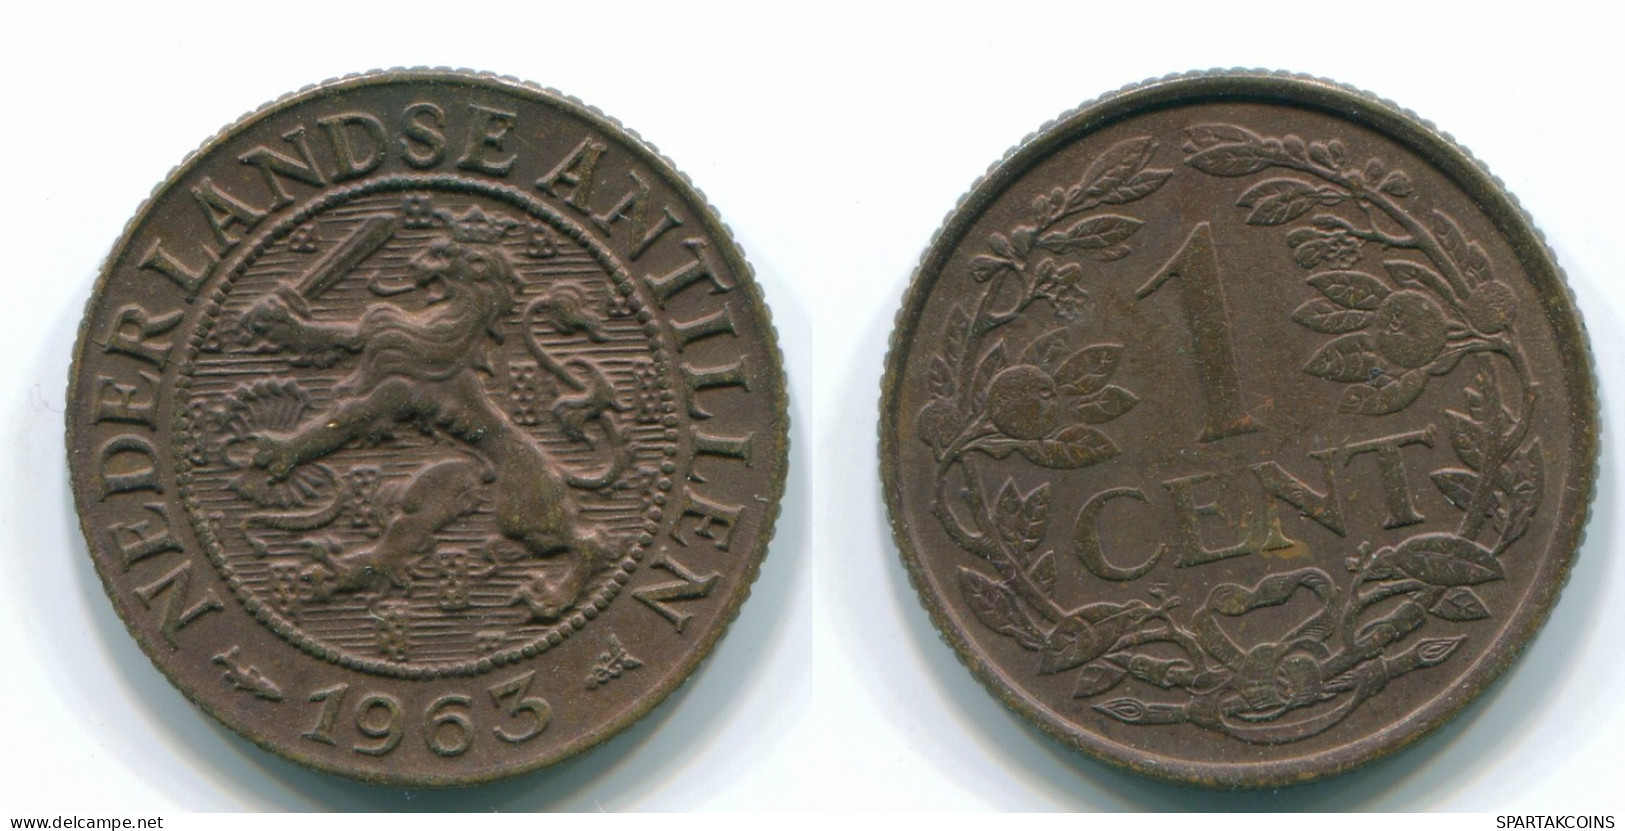 1 CENT 1963 NETHERLANDS ANTILLES Bronze Fish Colonial Coin #S11098.U.A - Antilles Néerlandaises